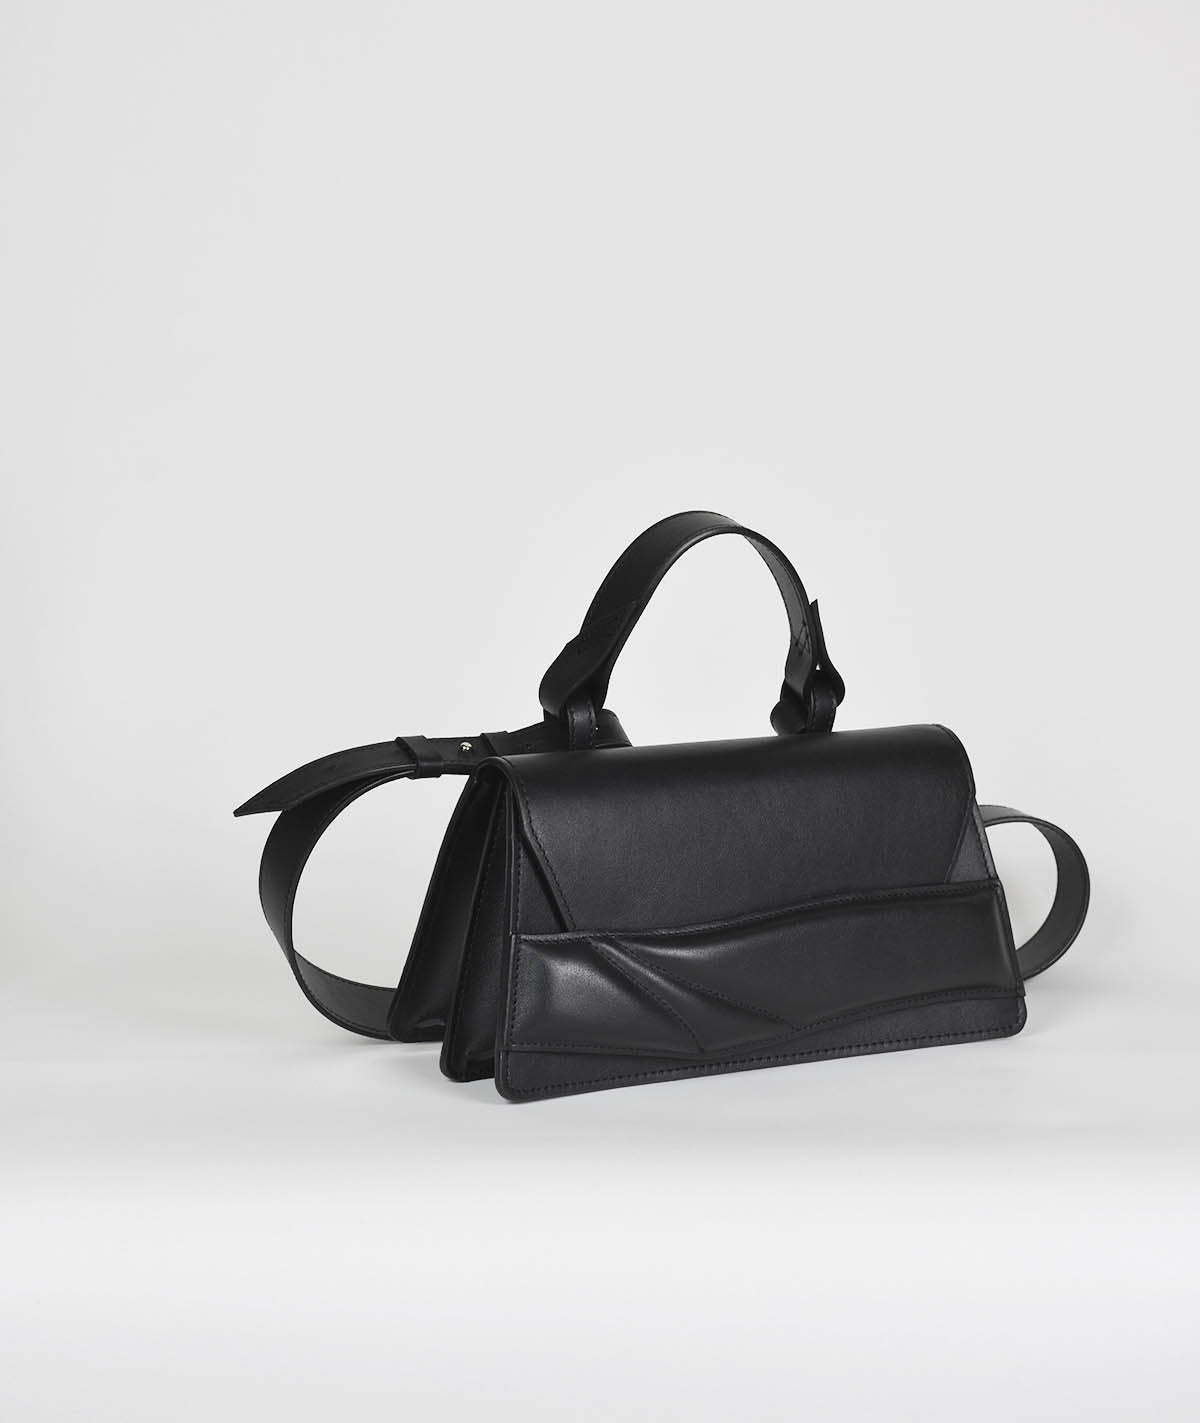 Black leather contemporary two compartment handbag with sculptural, matelasse wrist strap design. Fekete bőr designer crossbody táska egyedi pánt, kézifogóval, vállpánttal.